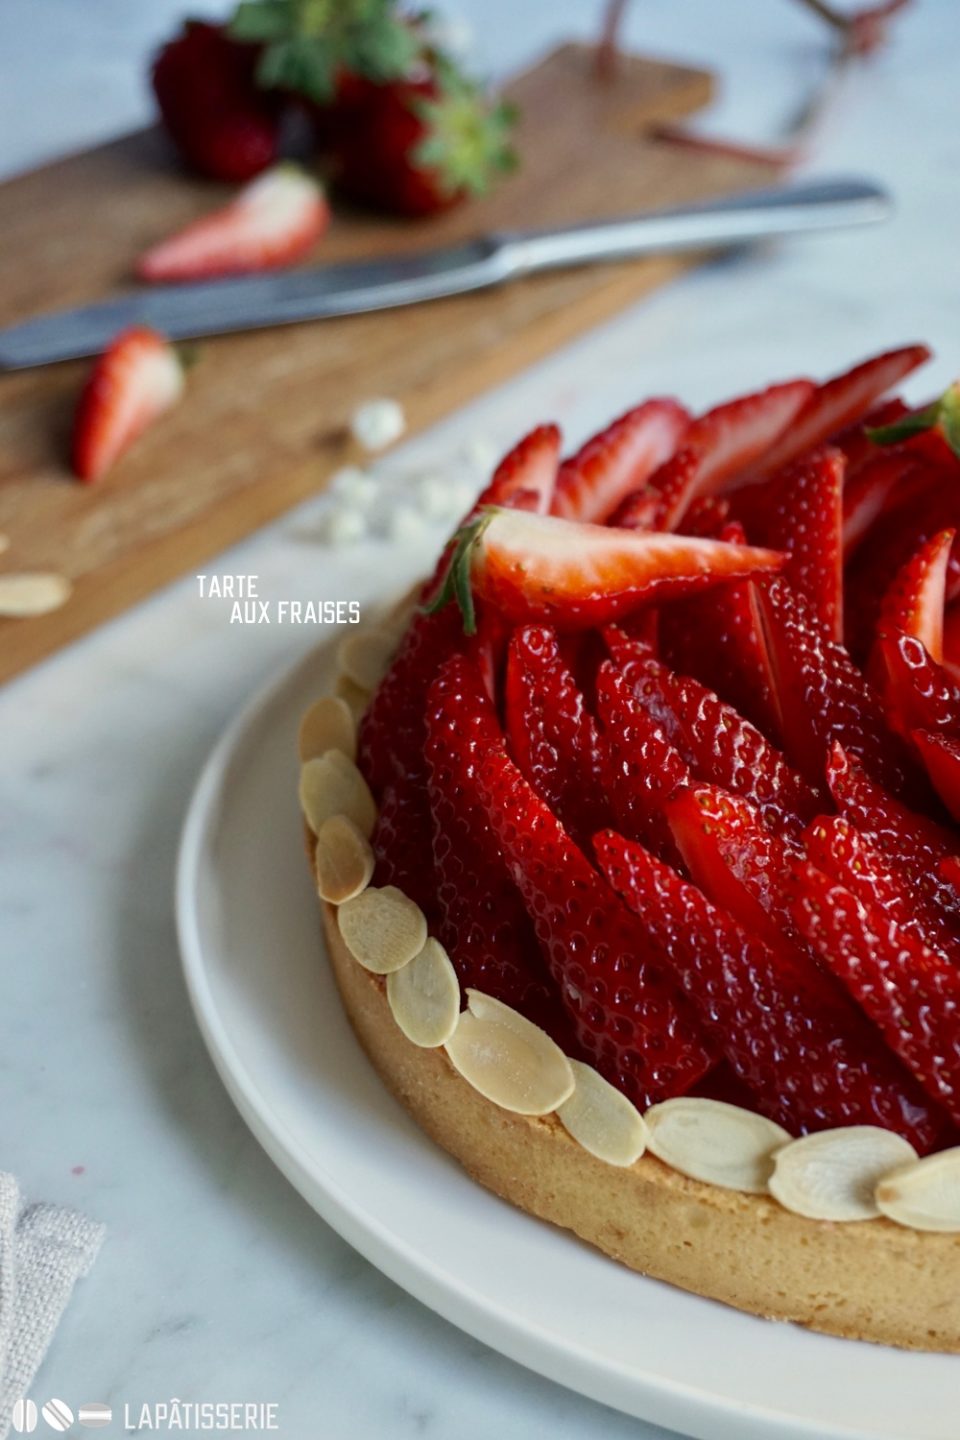 Feine Erdbeeren, fruchtige Erdbeercreme, zarter Mürbeteig: Tarte aux fraises.